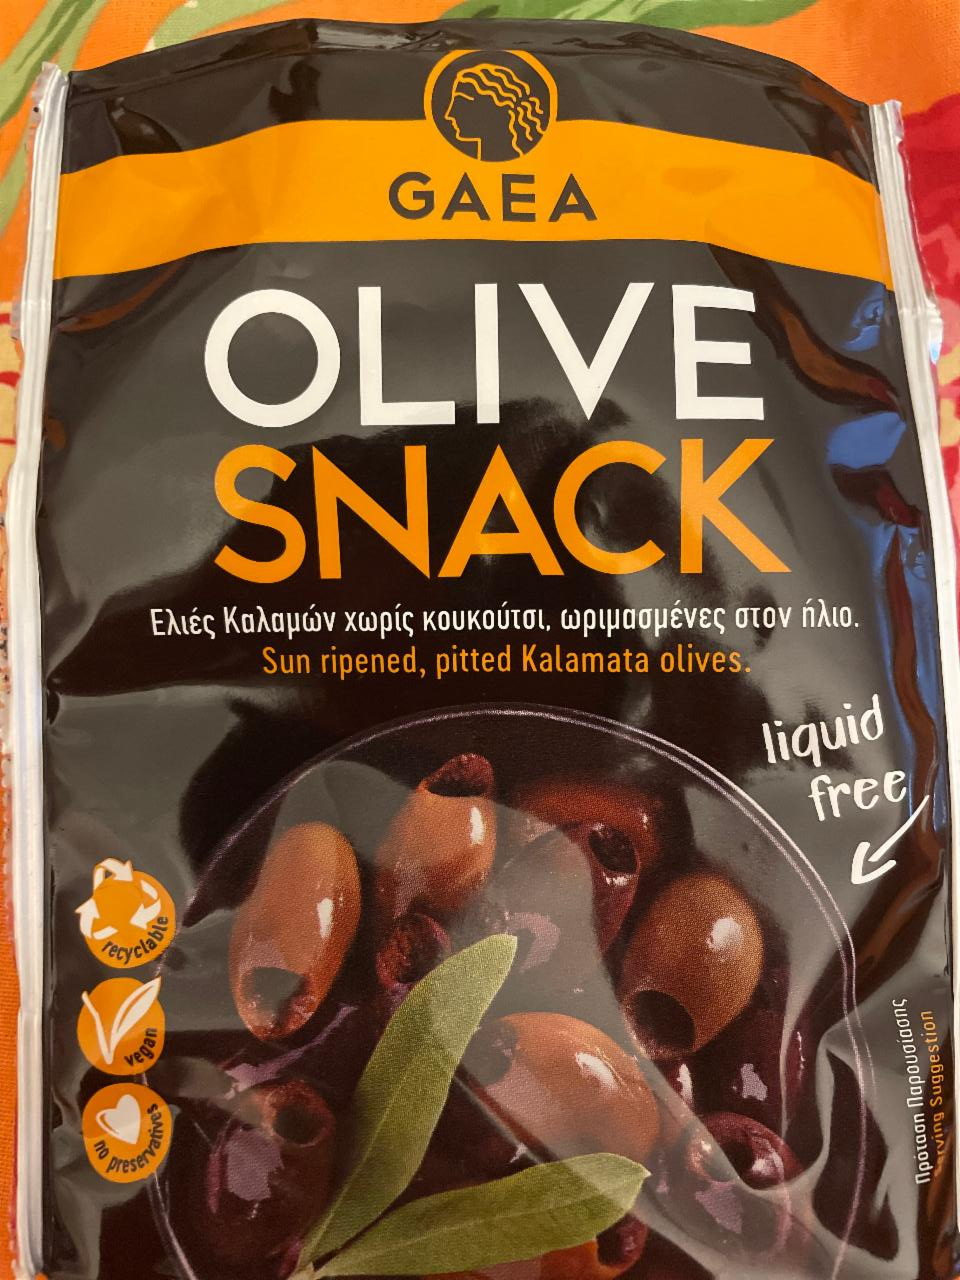 Képek - Olive snack GAEA